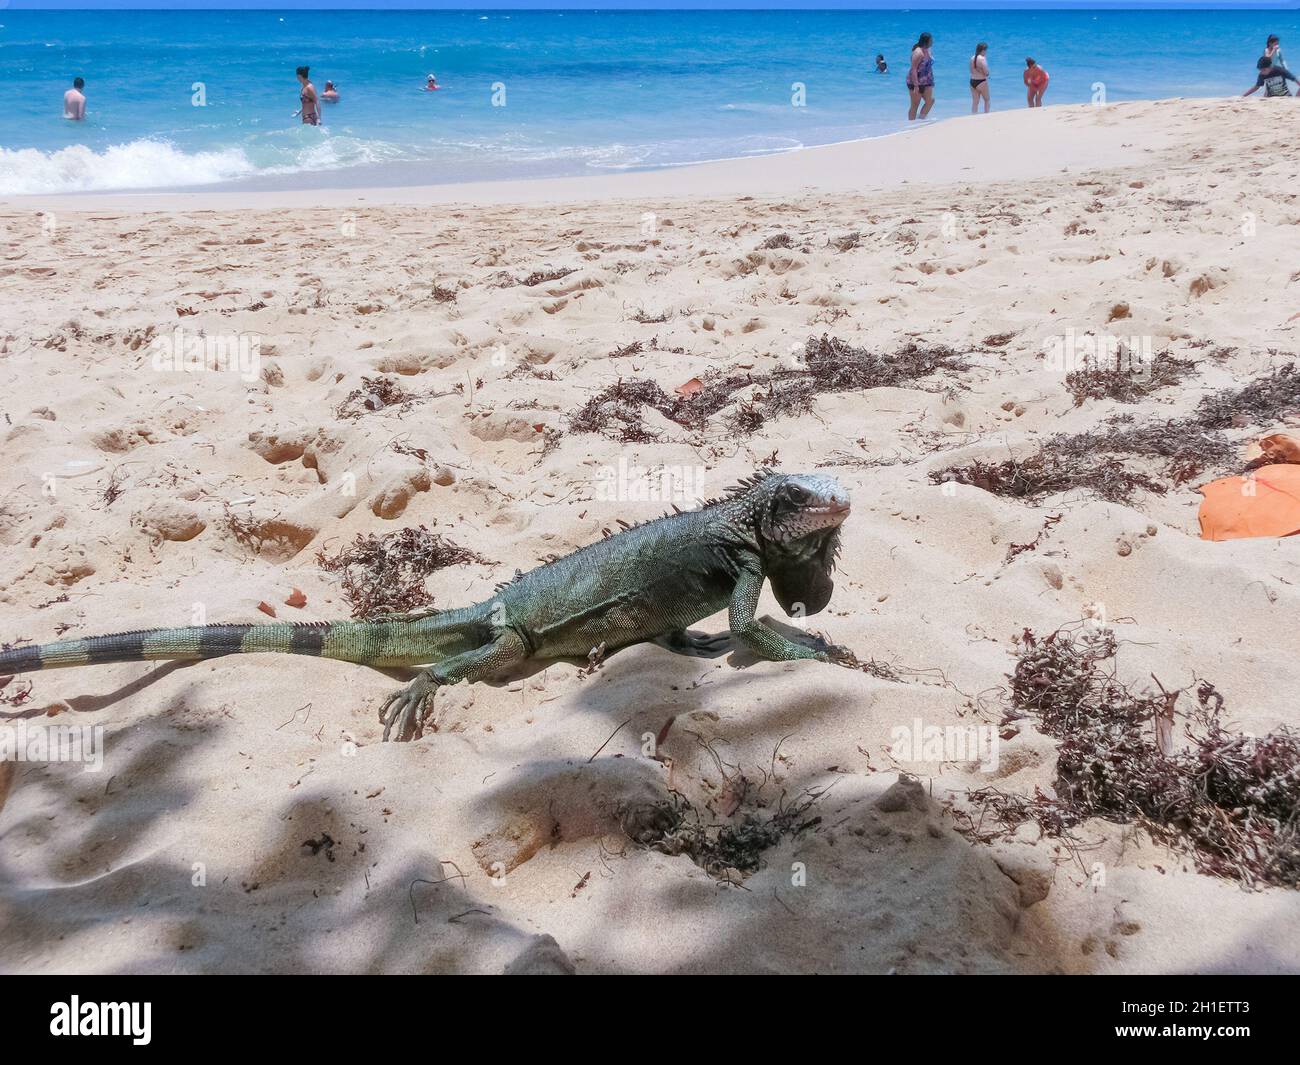 St. Thomas, Isole Vergini americane - 16 maggio 2016: La gente alla spiaggia tropicale dei Caraibi mattina Star Marriott Frenchmans Cove resort. Foto Stock